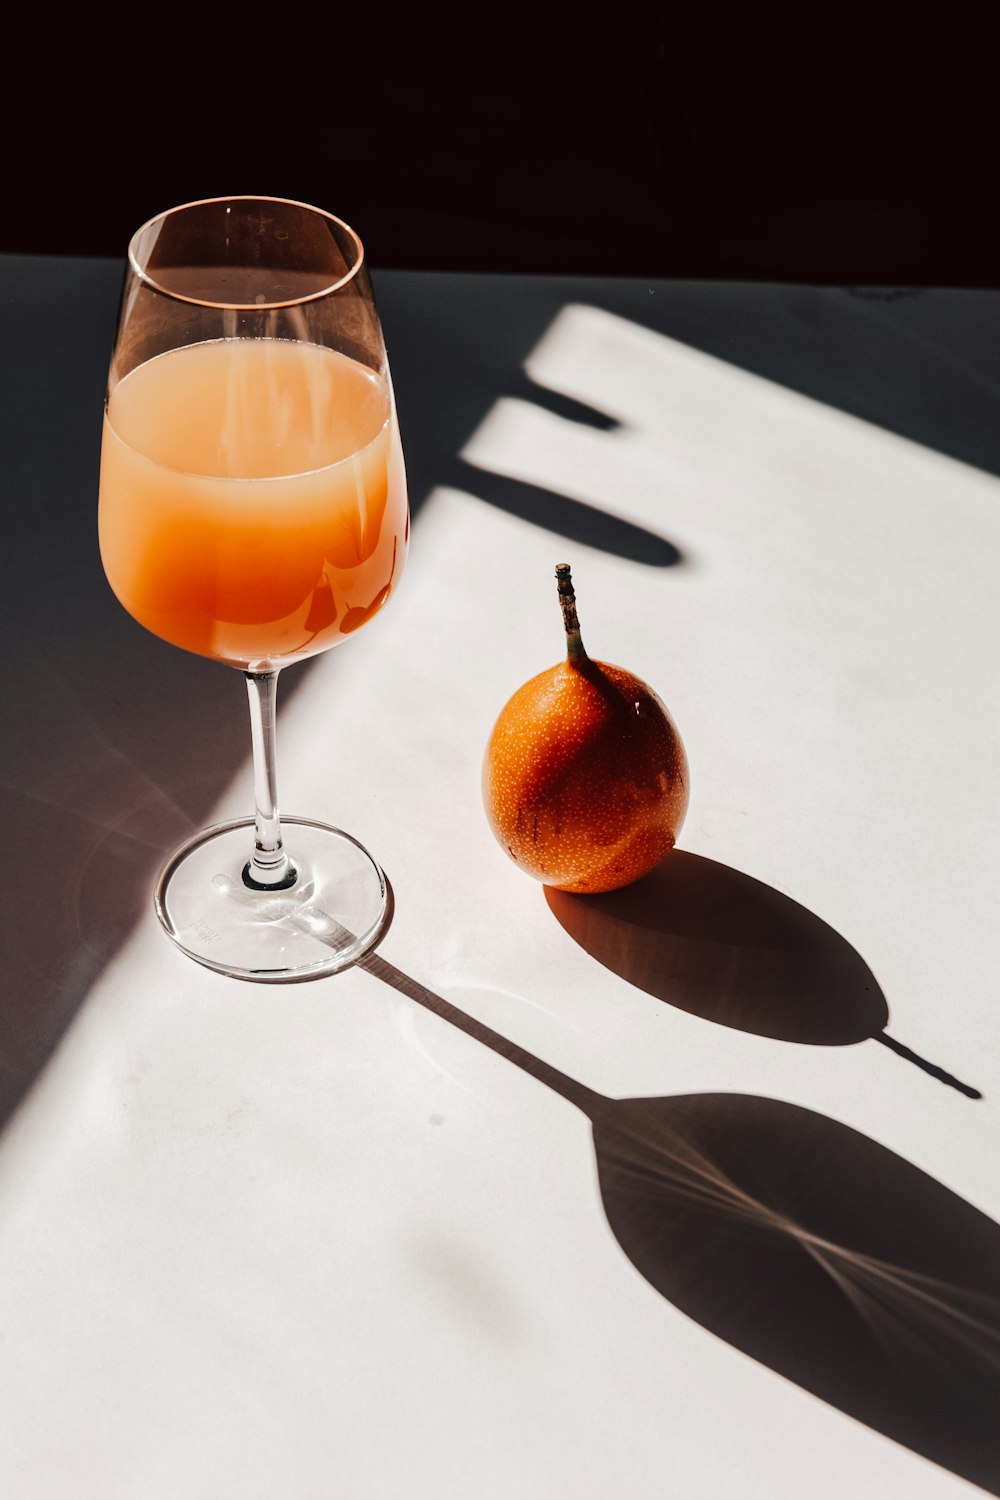 銀のスプーンの横の透明なワイングラスに入ったオレンジジュース